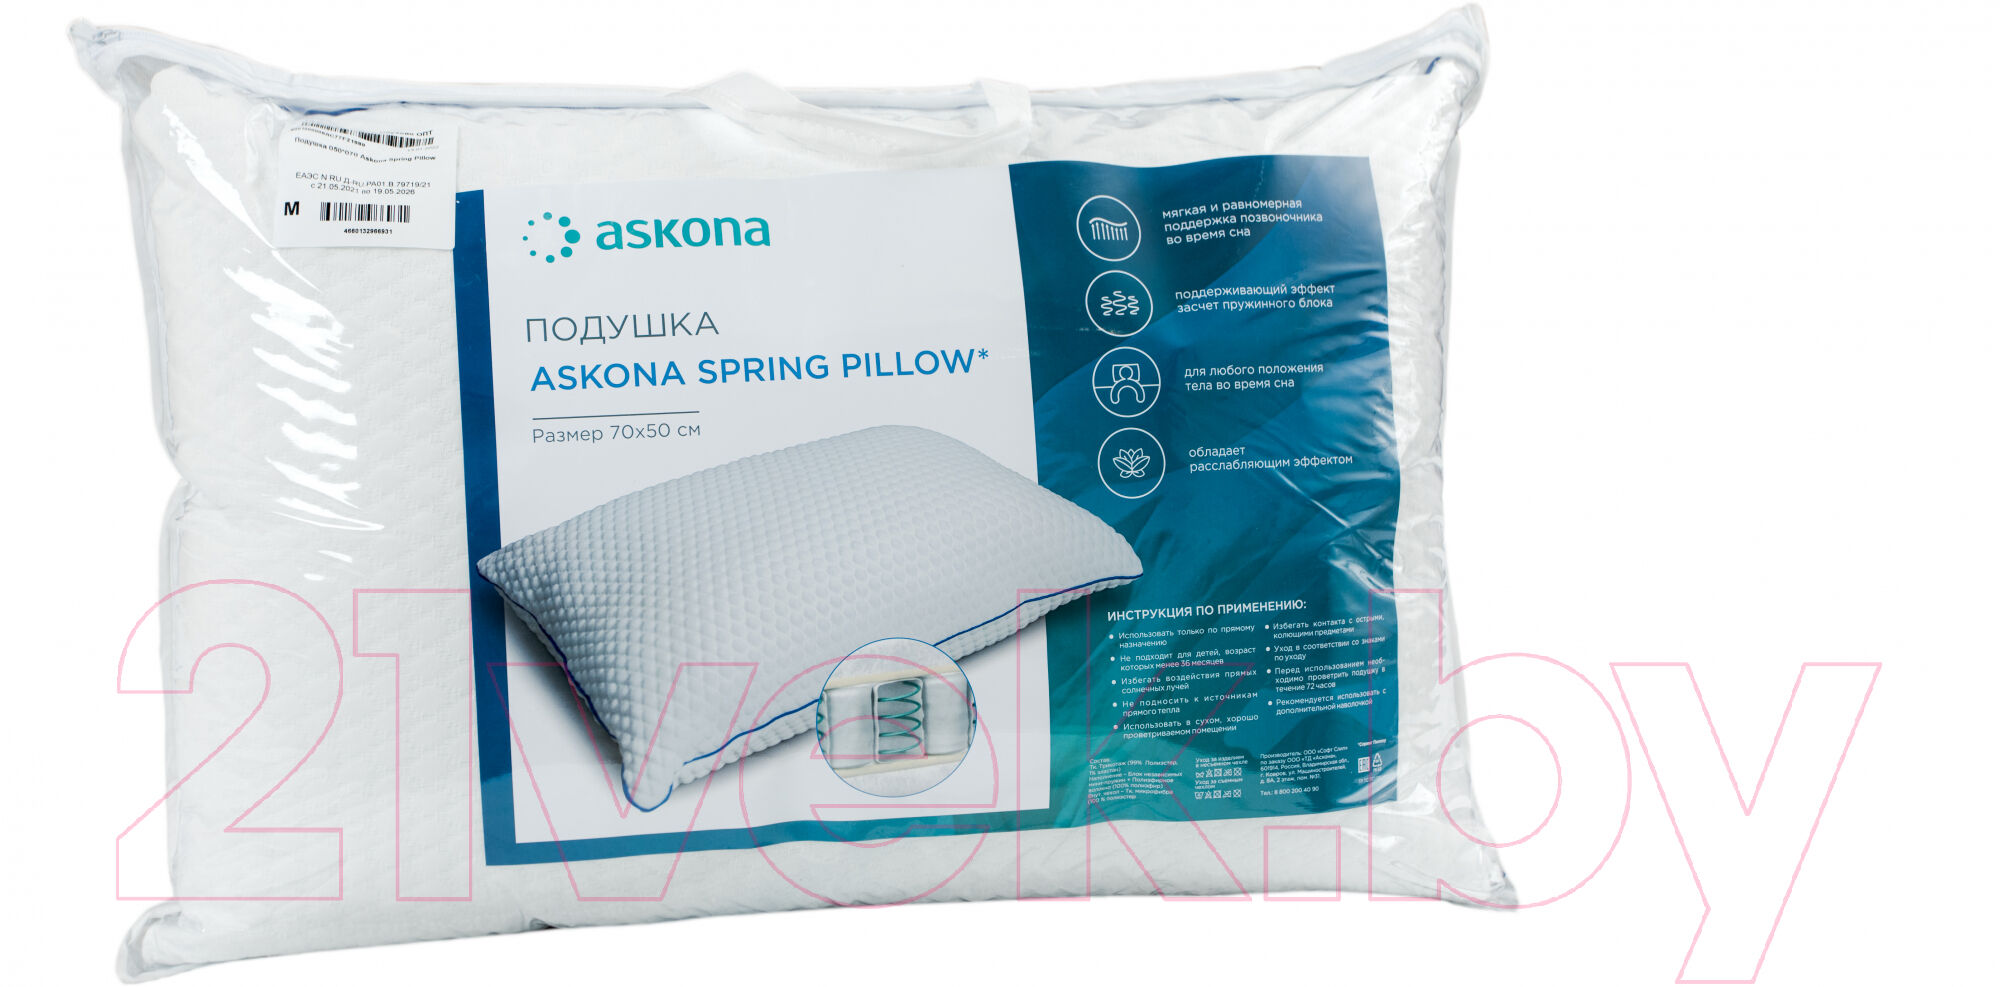 Ортопедическая подушка Askona Mediflex Spring Pillow 4